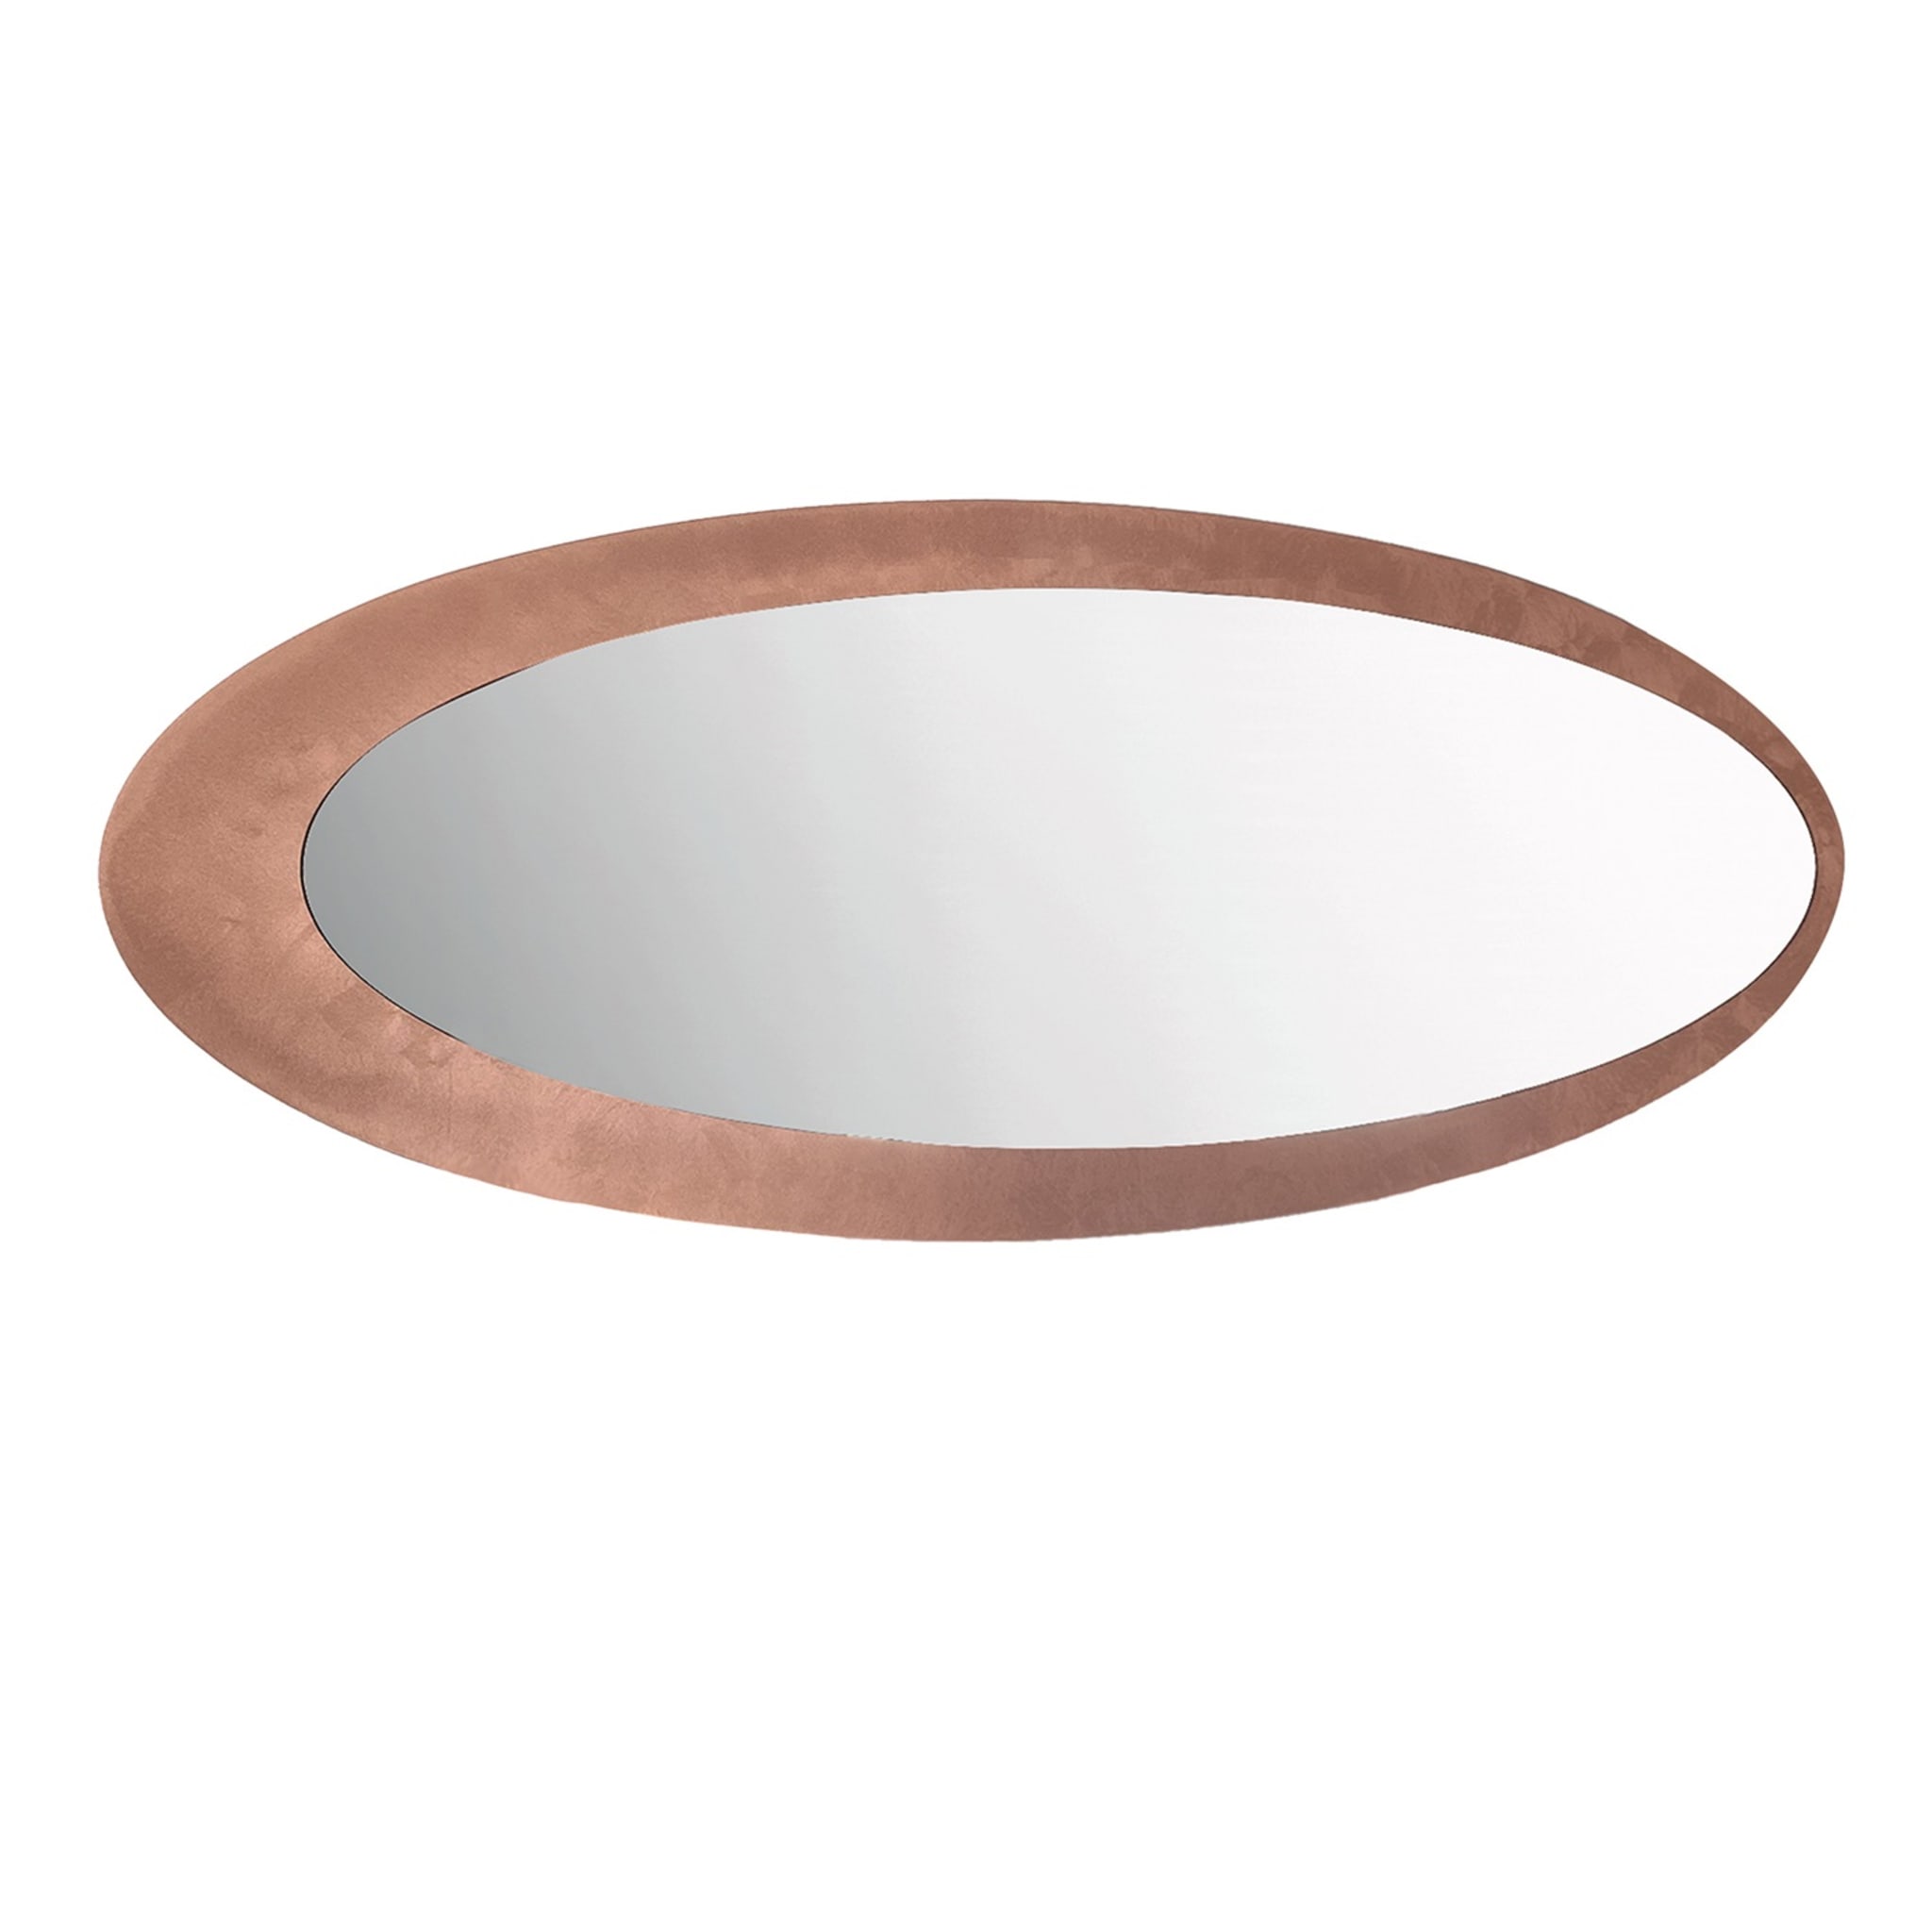 Ovaler Kupferspiegel Orbit von Fabio Casali - Hauptansicht